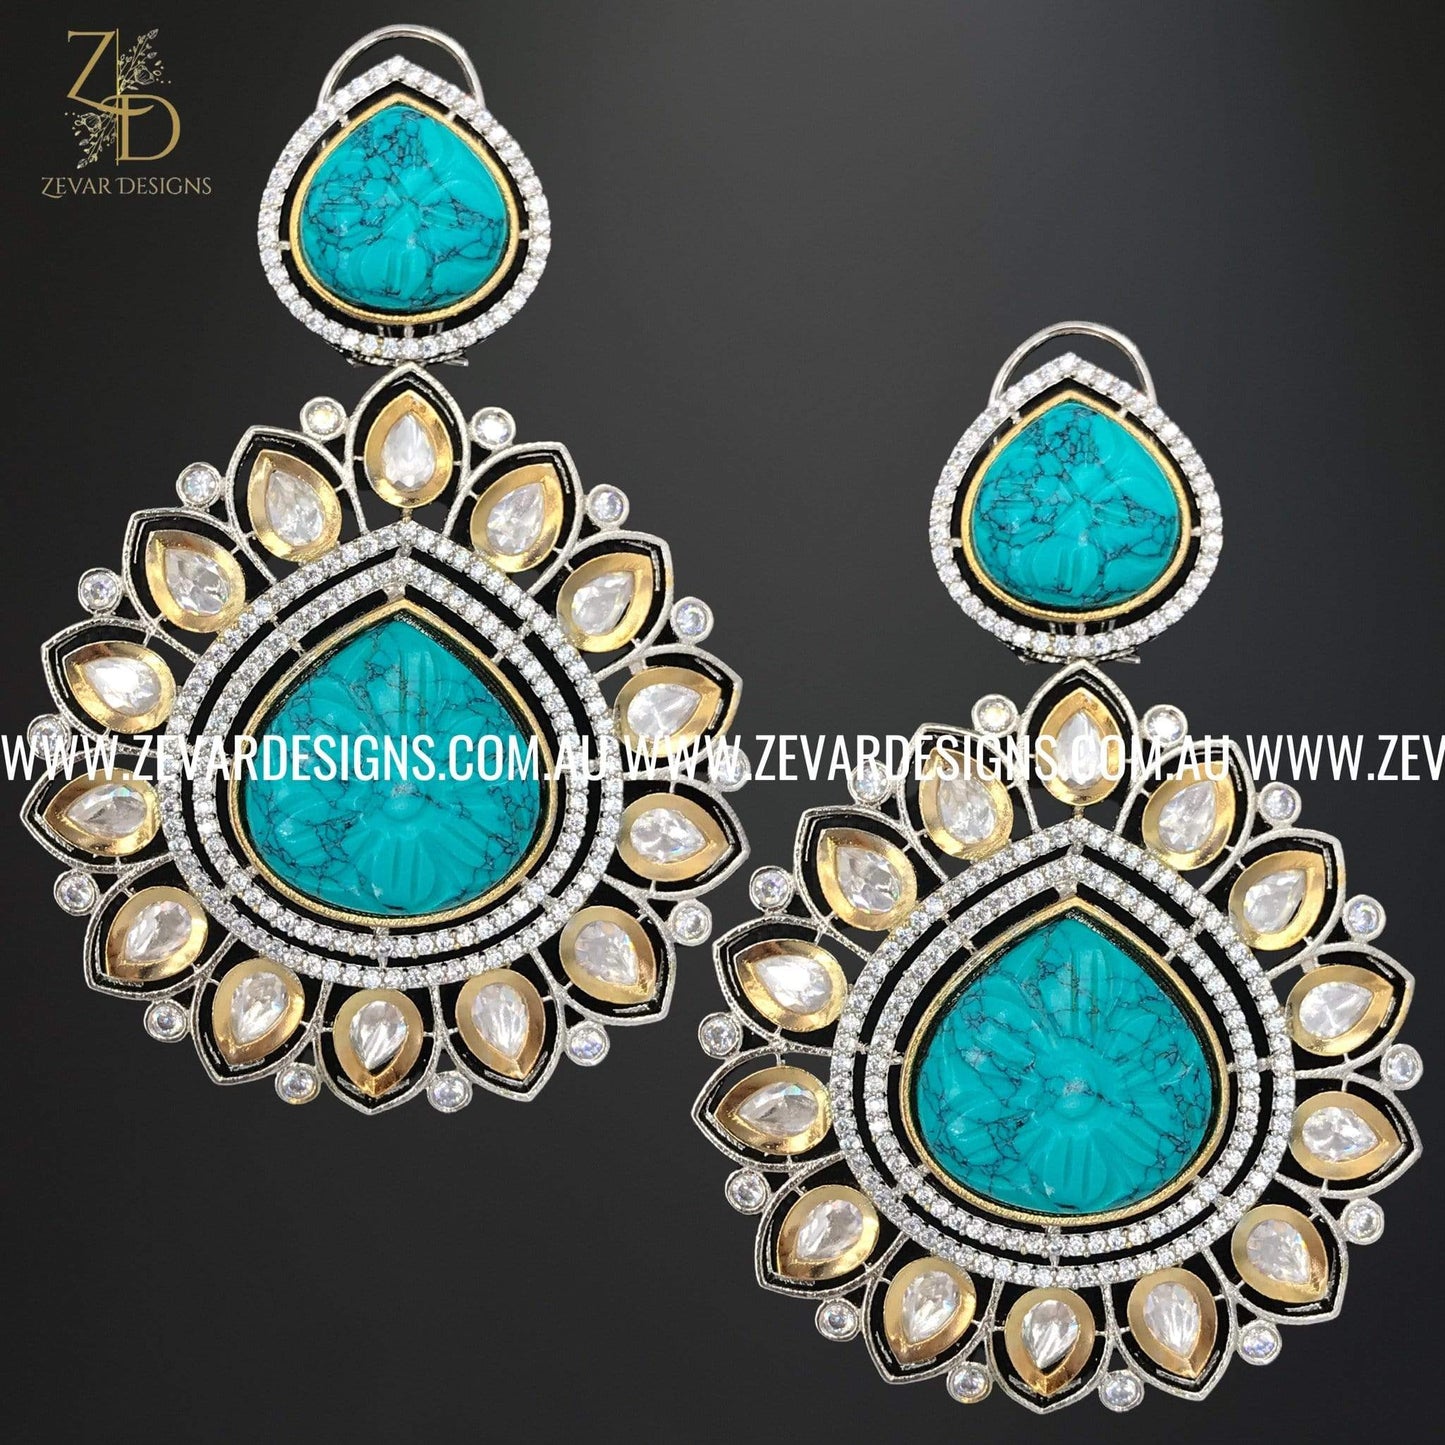 Zevar Designs Kundan Earrings AD and Kundan Polki Earrings with Carved stone - Ocean Blue